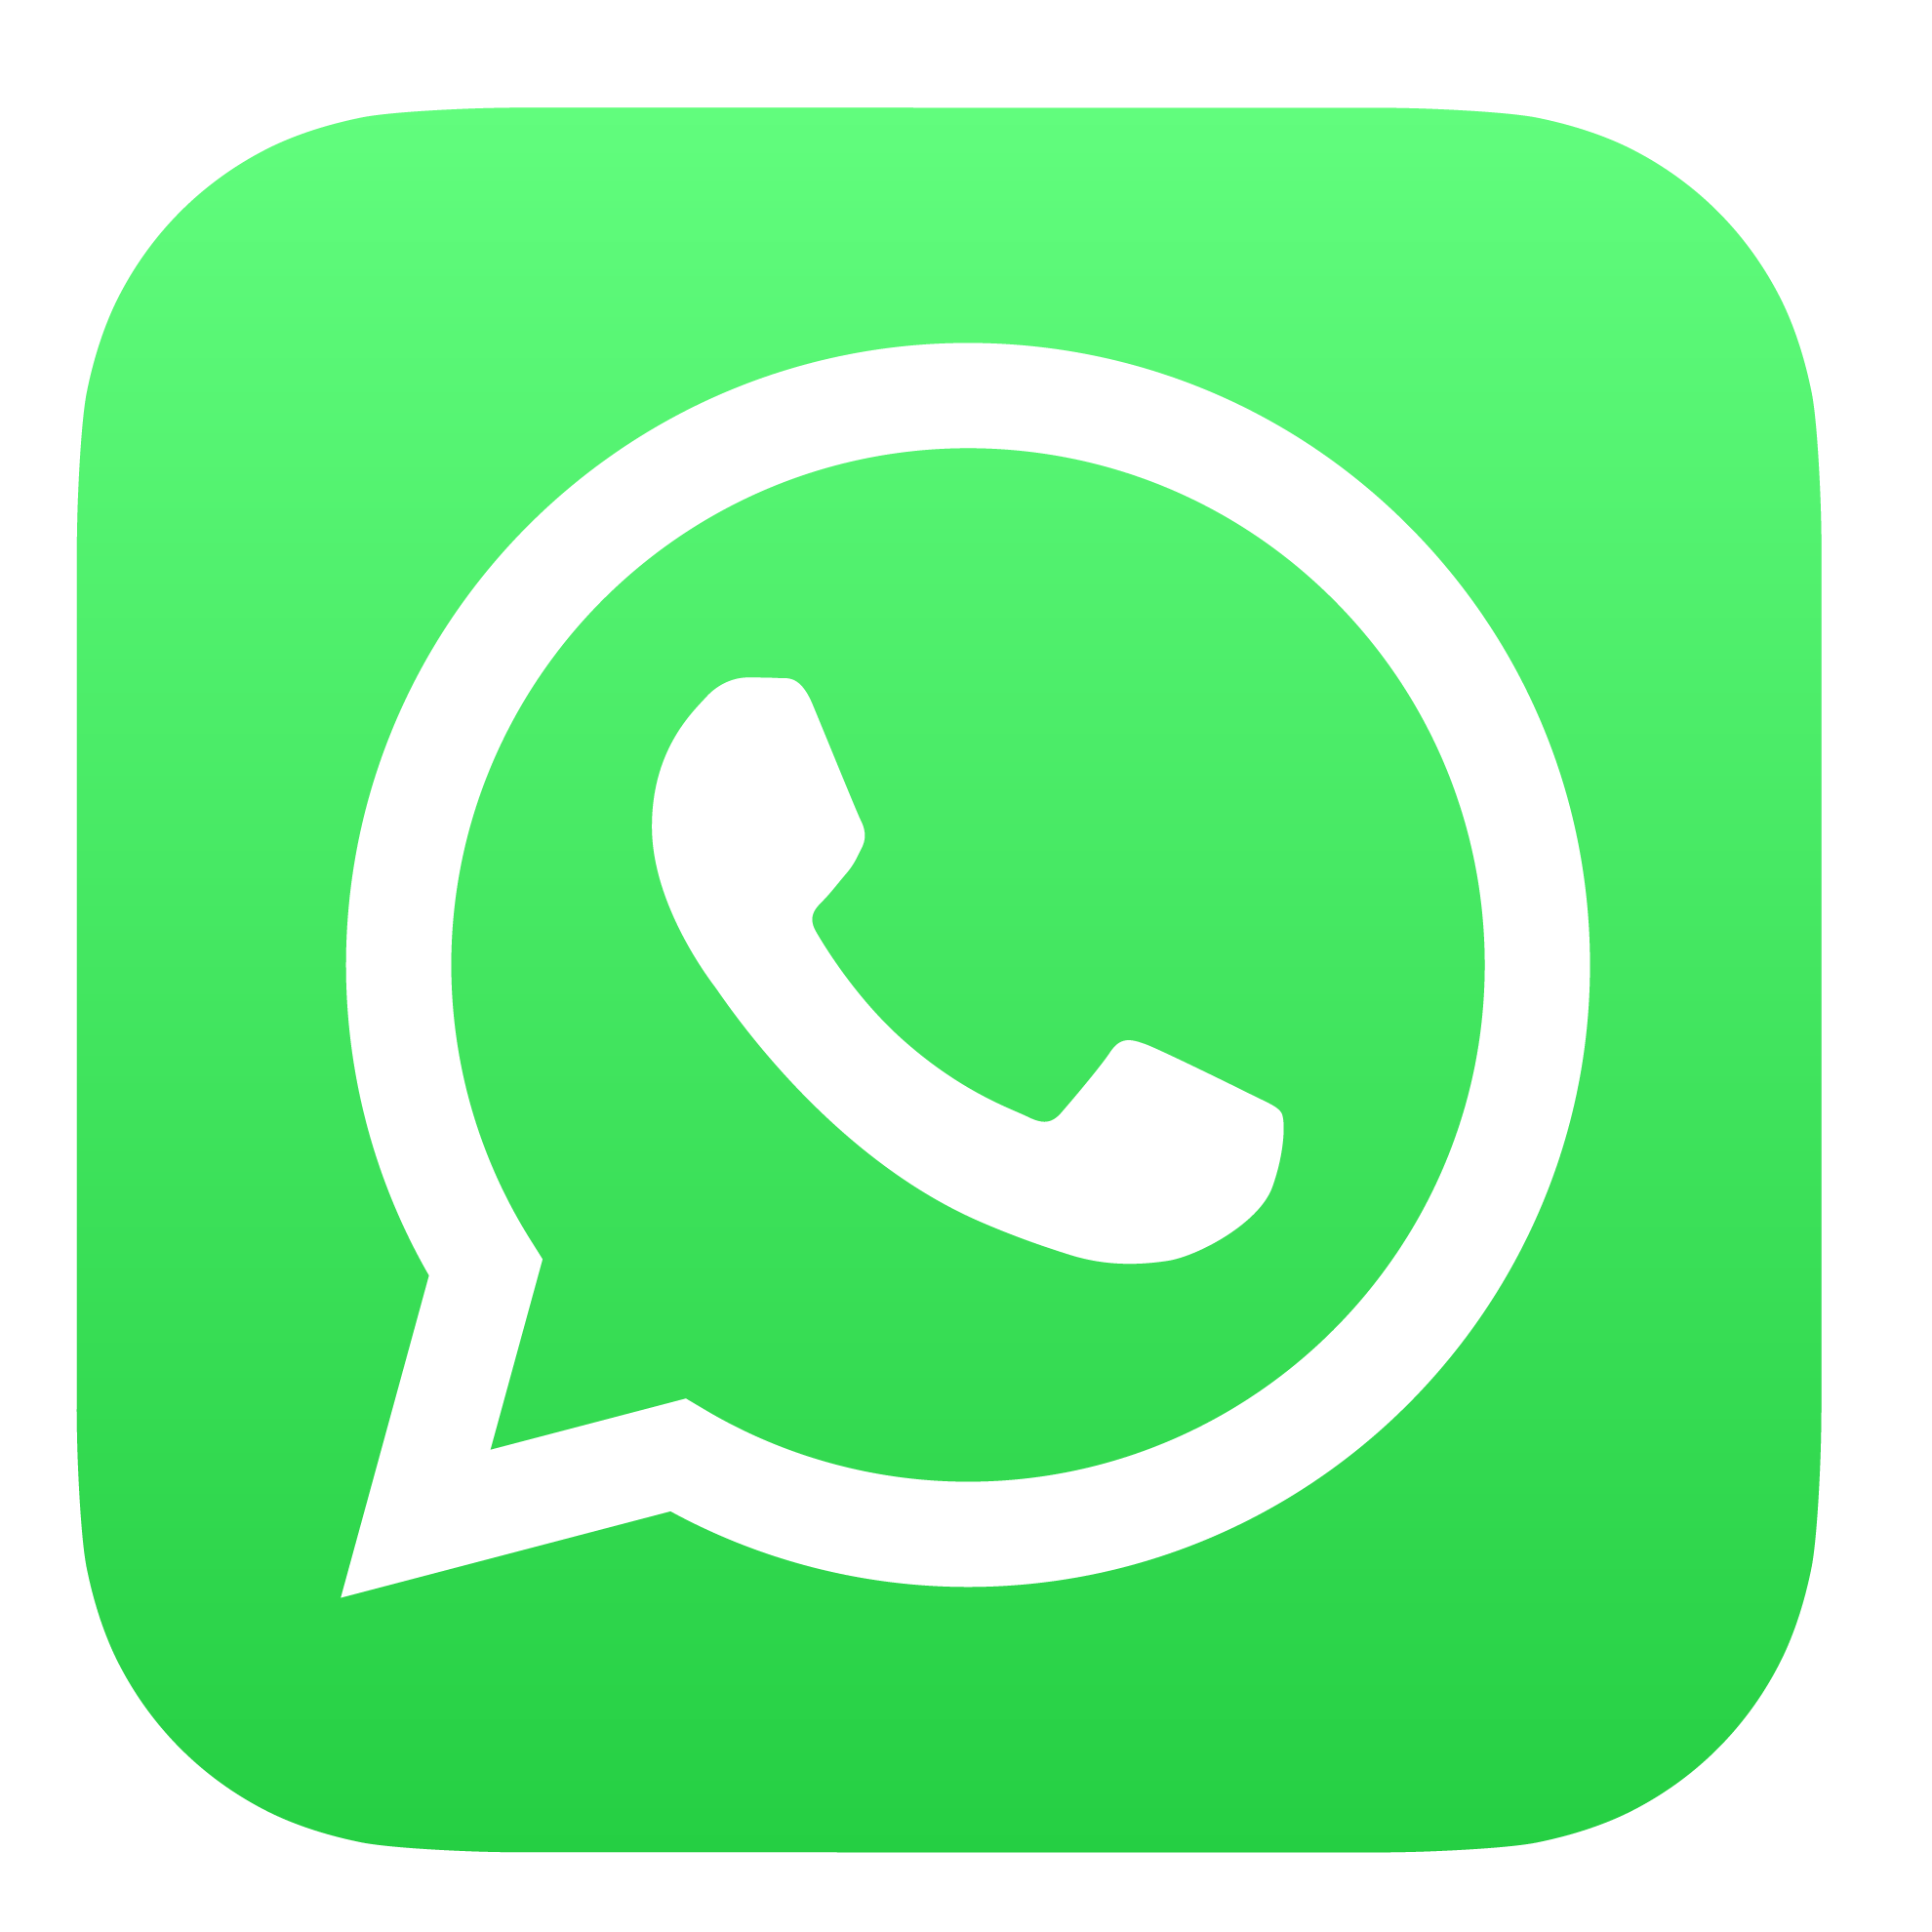 Mensajería instantánea WhatsApp incluido en nuestros Planes y al realizar tu portabilidad